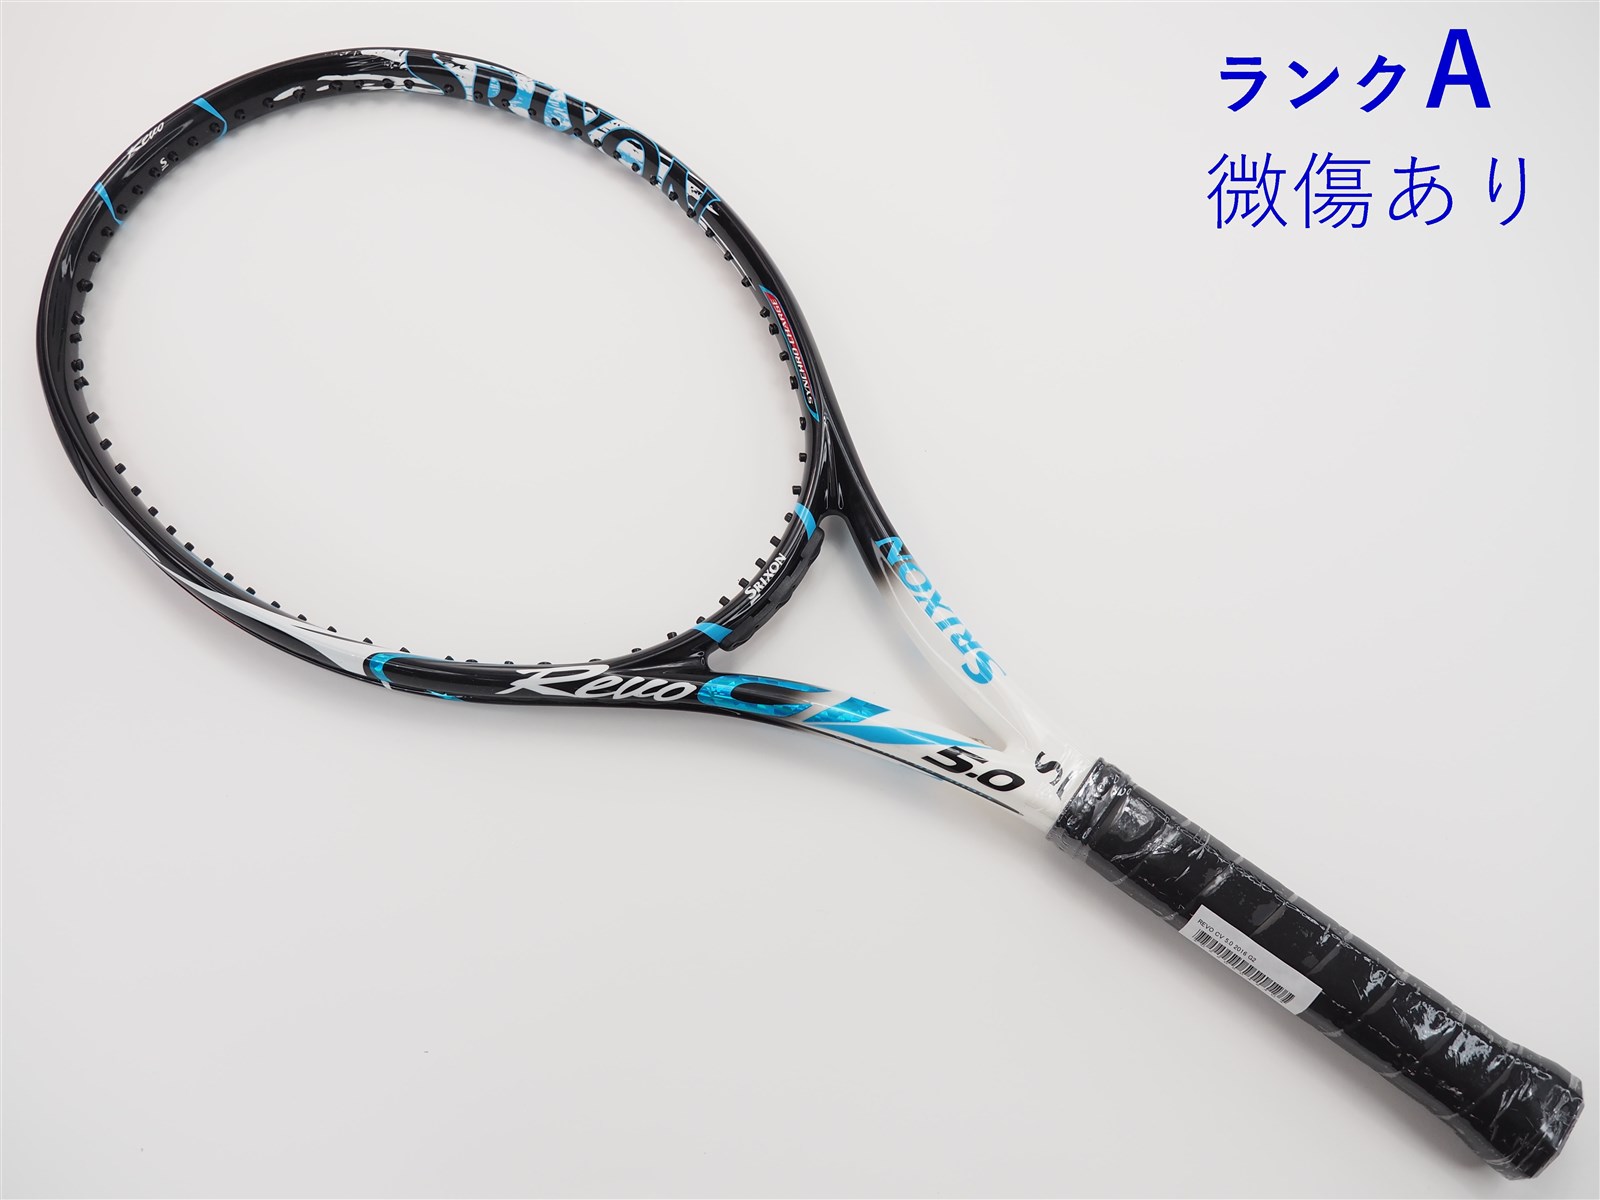 テニスラケット スリクソン レヴォ CV 5.0 2016年モデル (G2)SRIXON REVO CV 5.0 2016ガット無しグリップサイズ